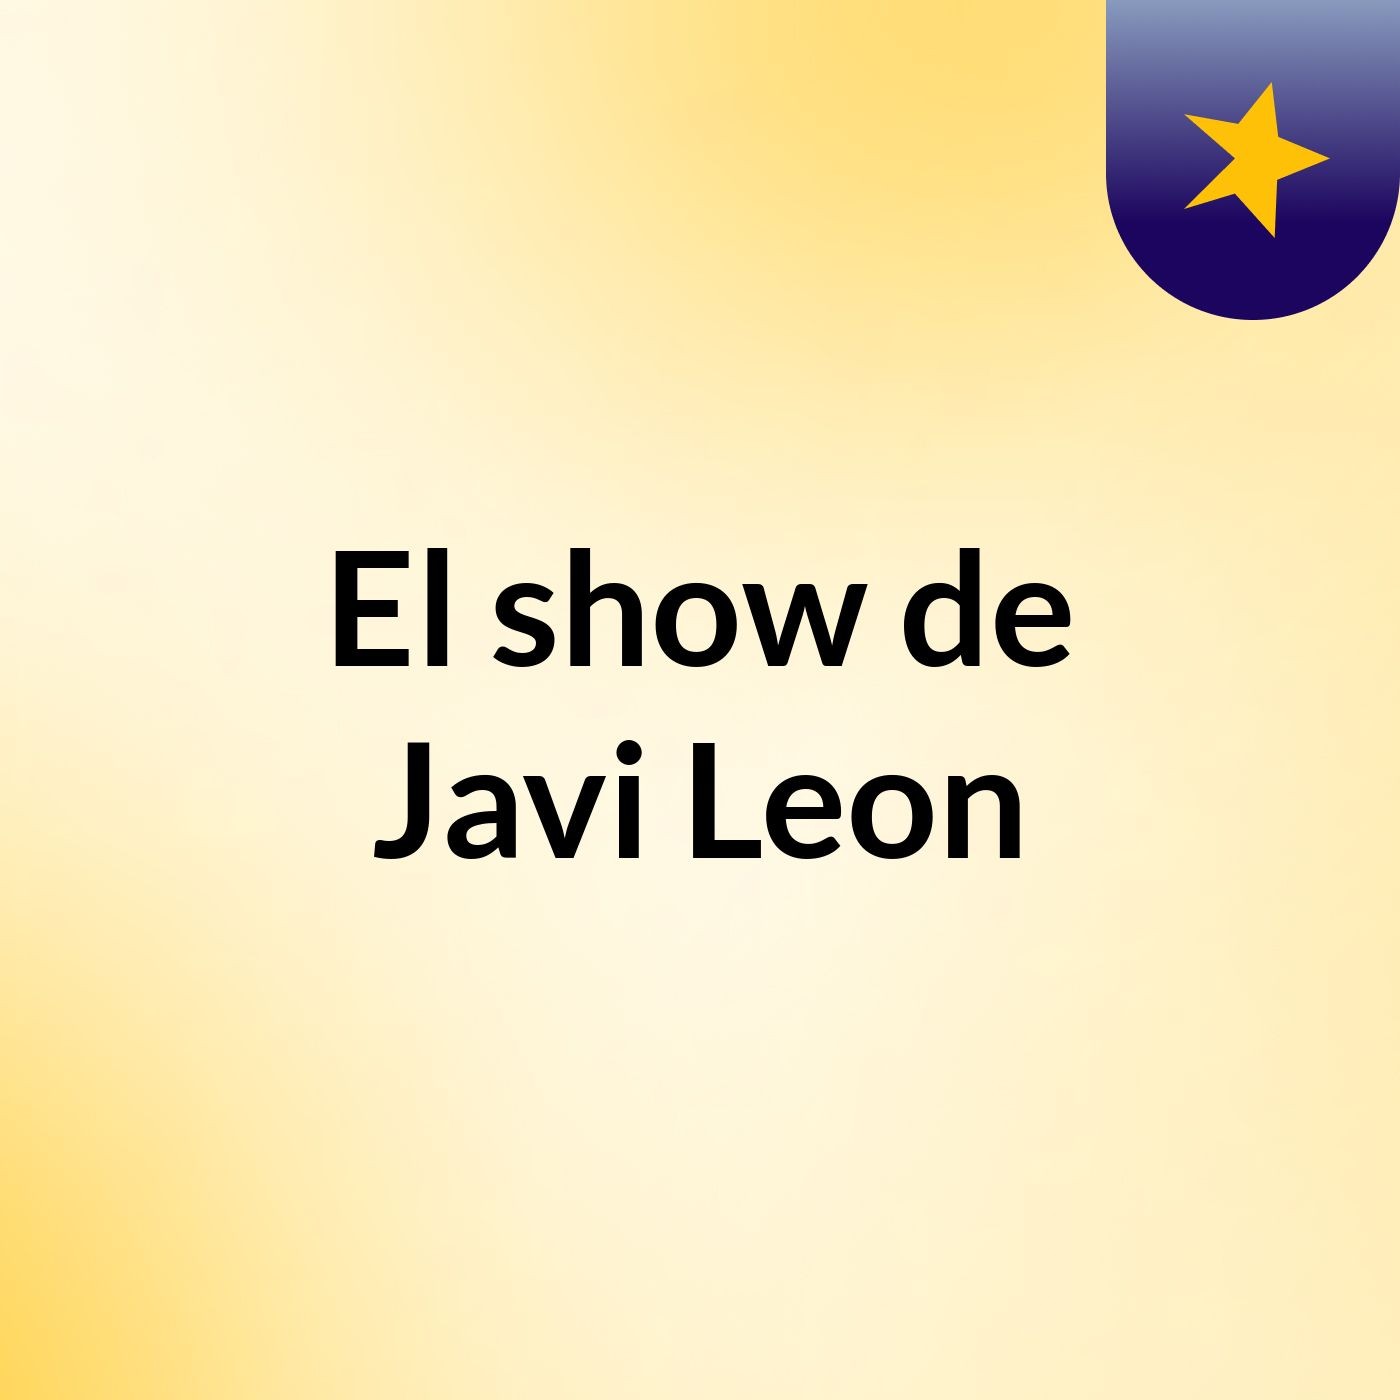 El show de Javi Leon